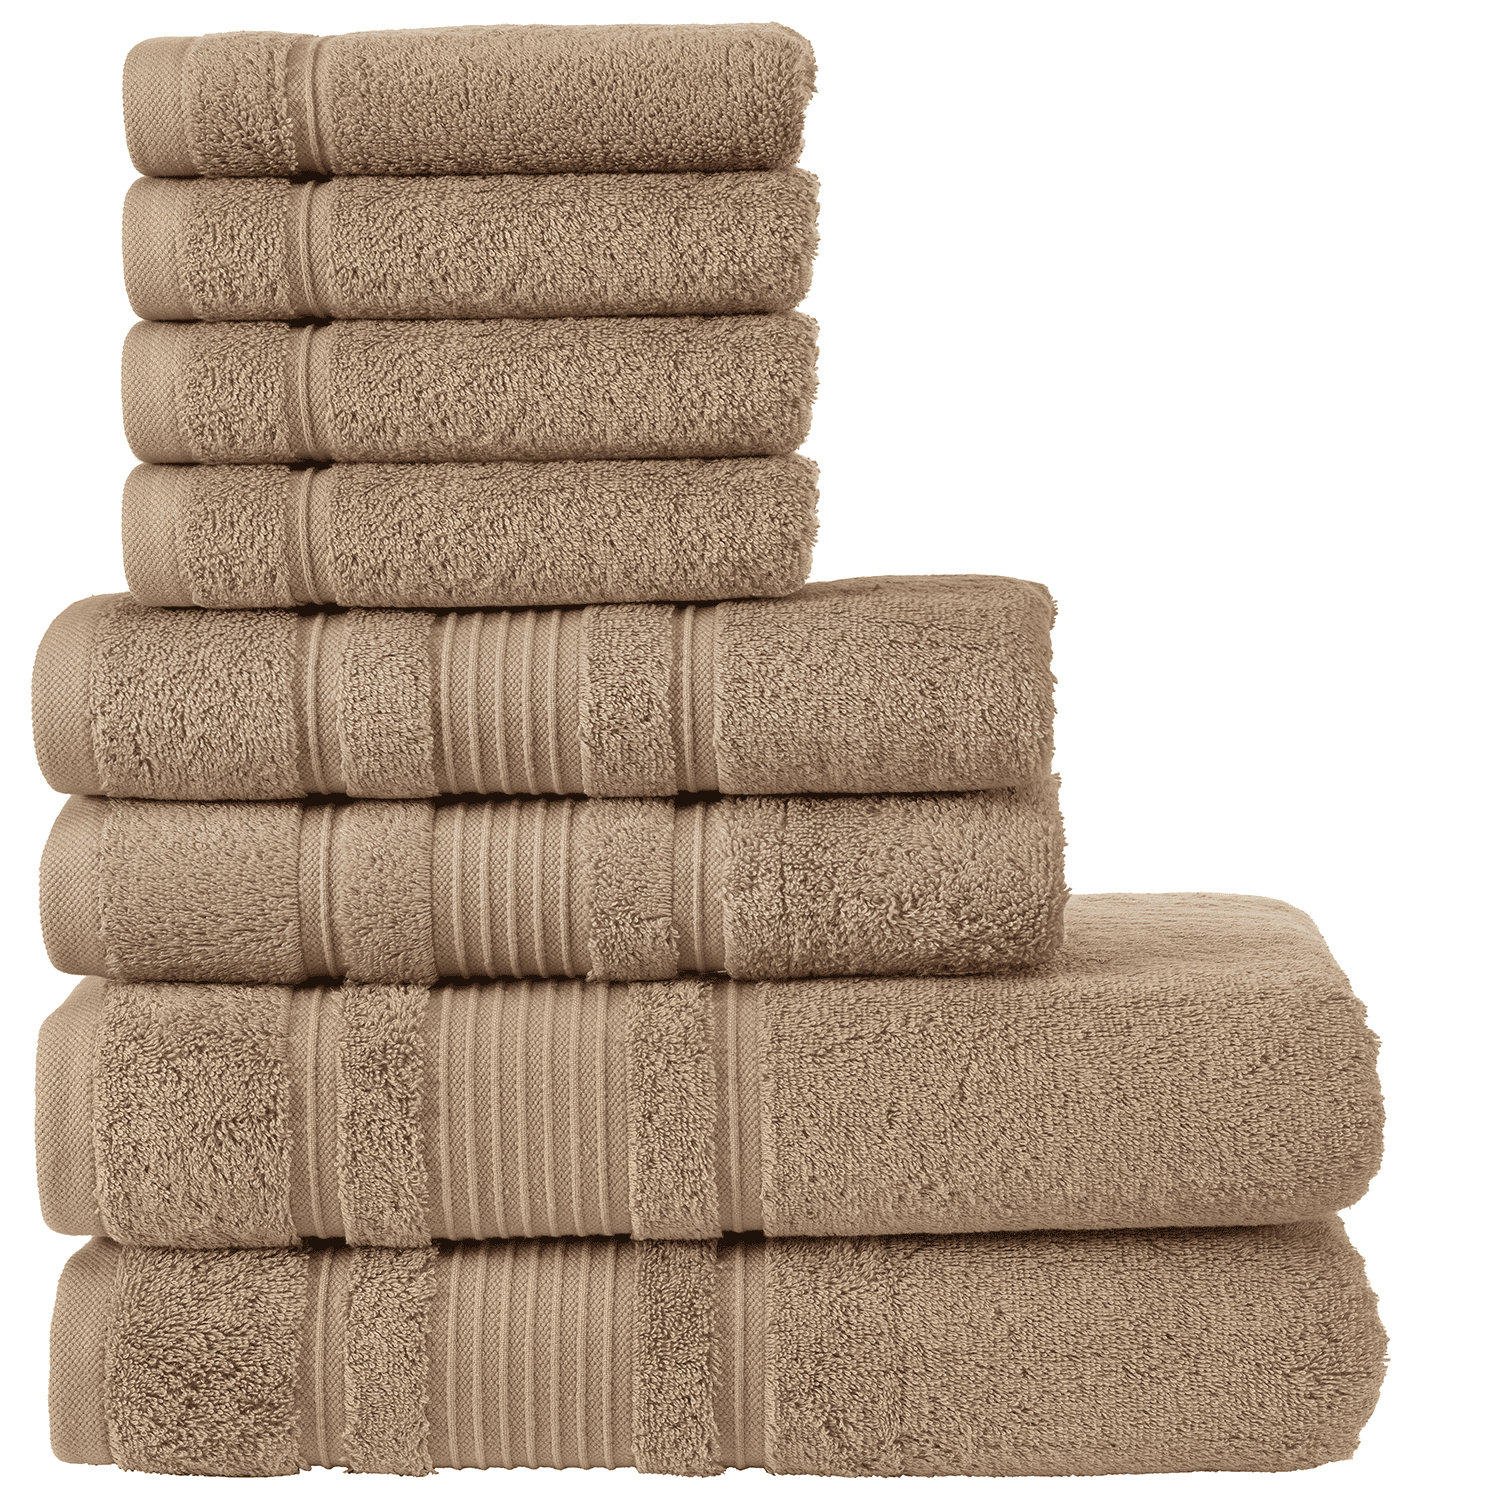 Qute Home Spa Hotel Towels 8 Piece Towel Set 2 Bath Towels 2 Hand